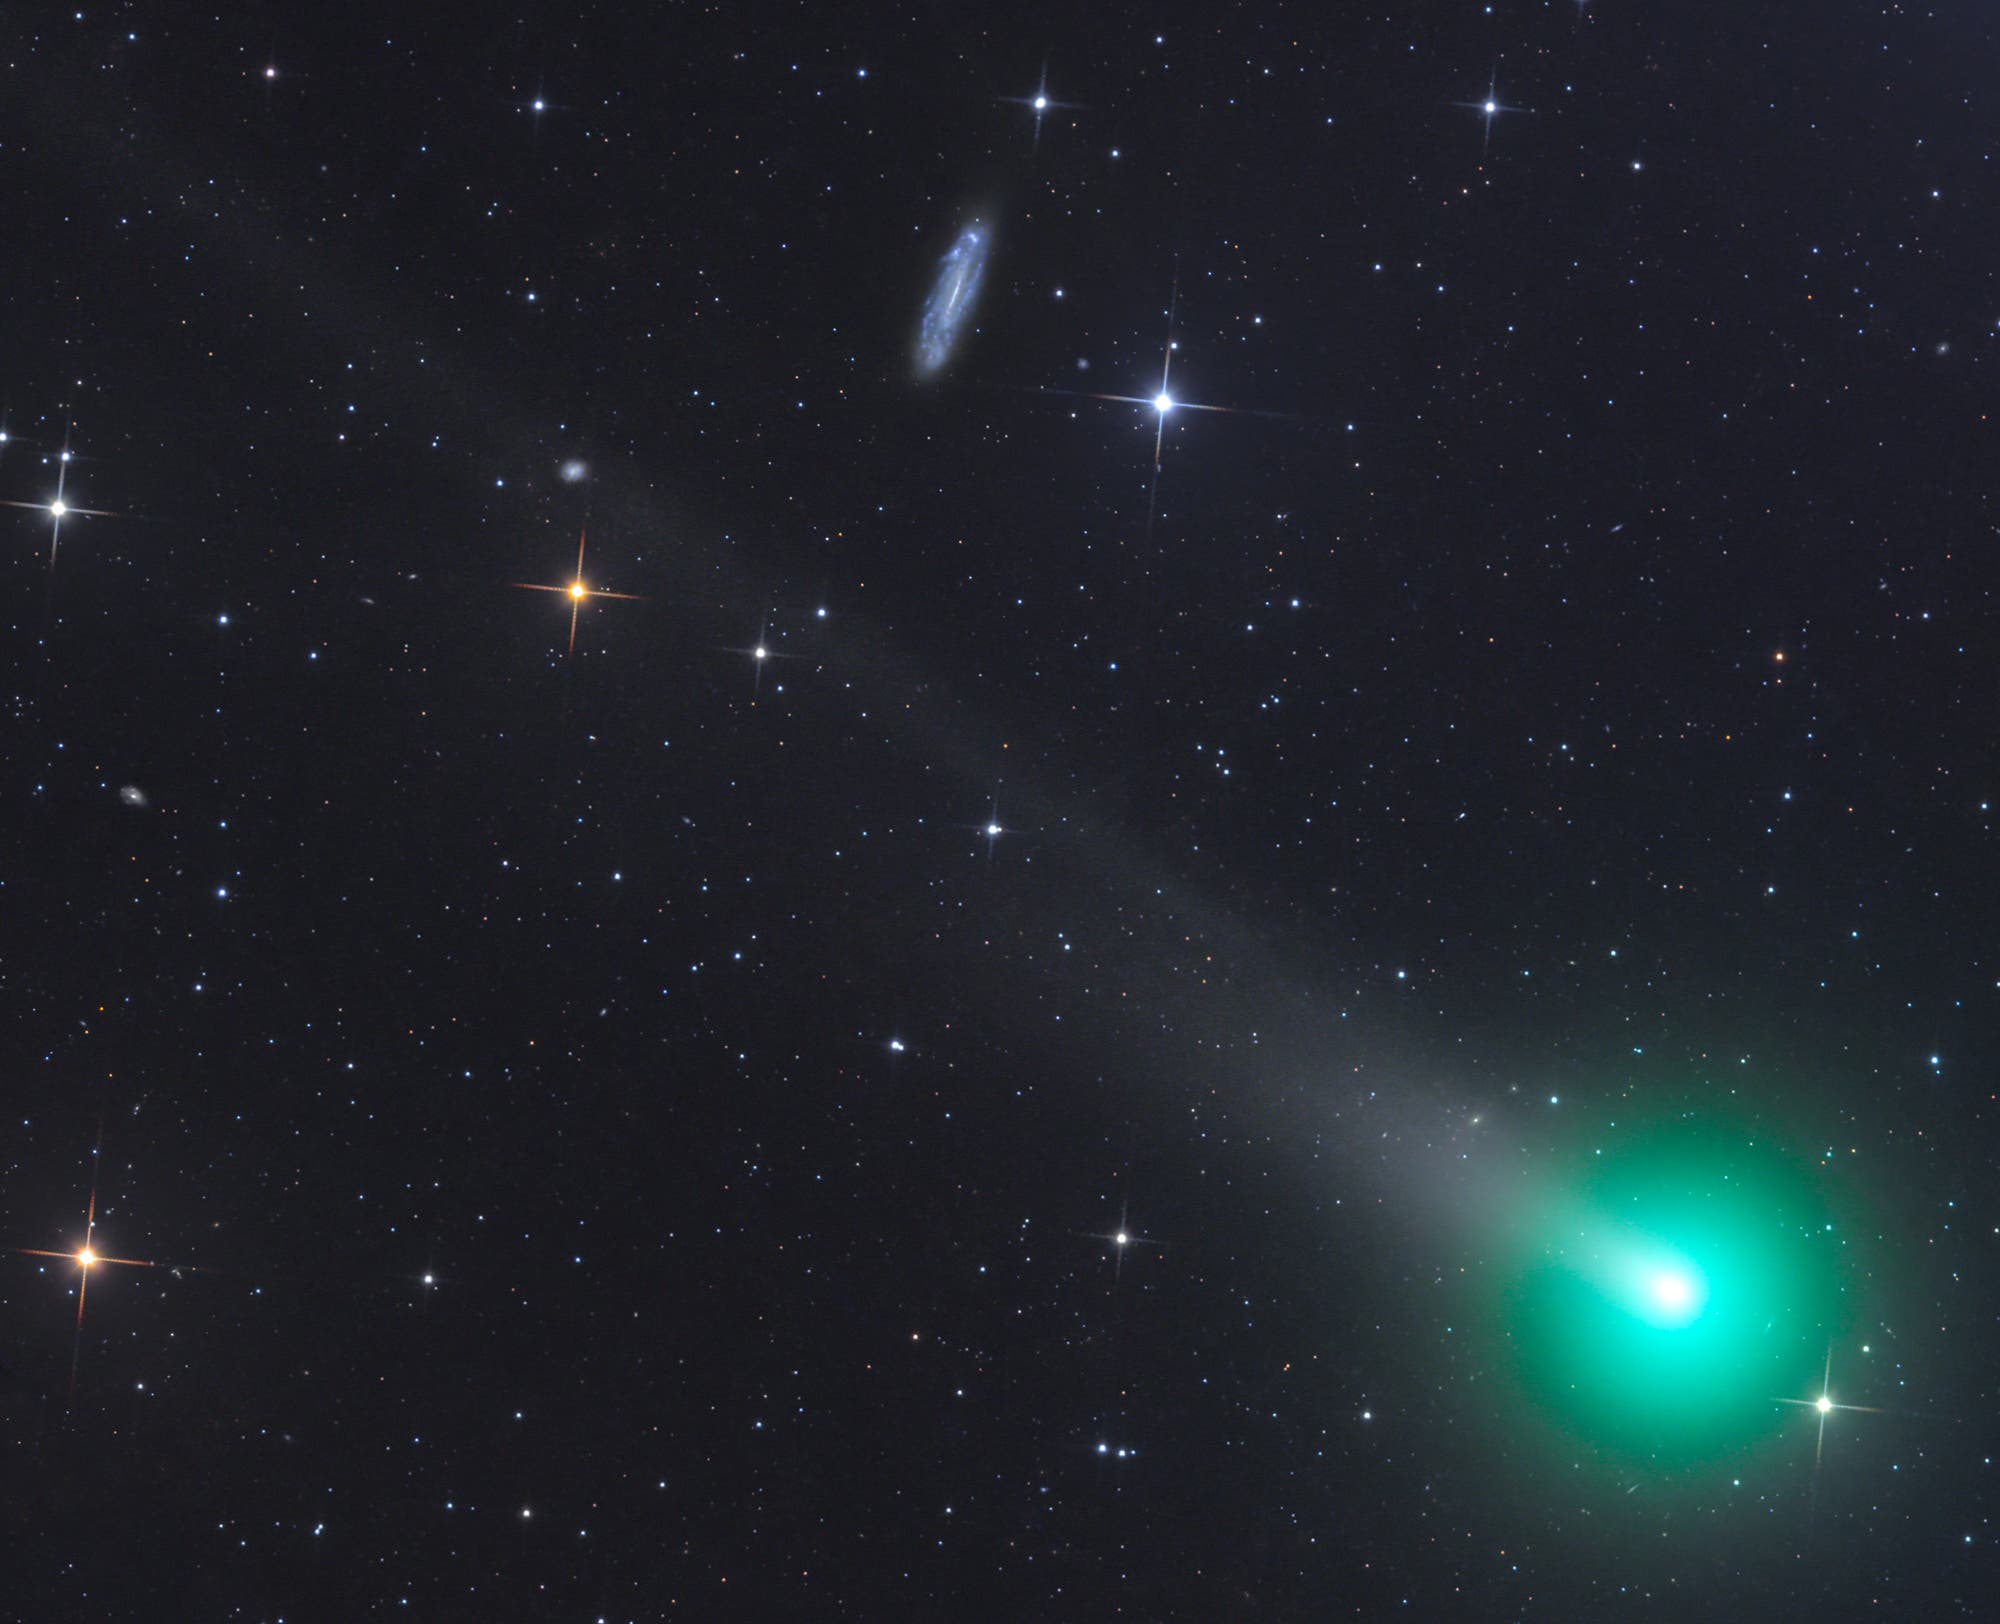 Komet 62P/Tsuchinshan bei Galaxie NGC 4178